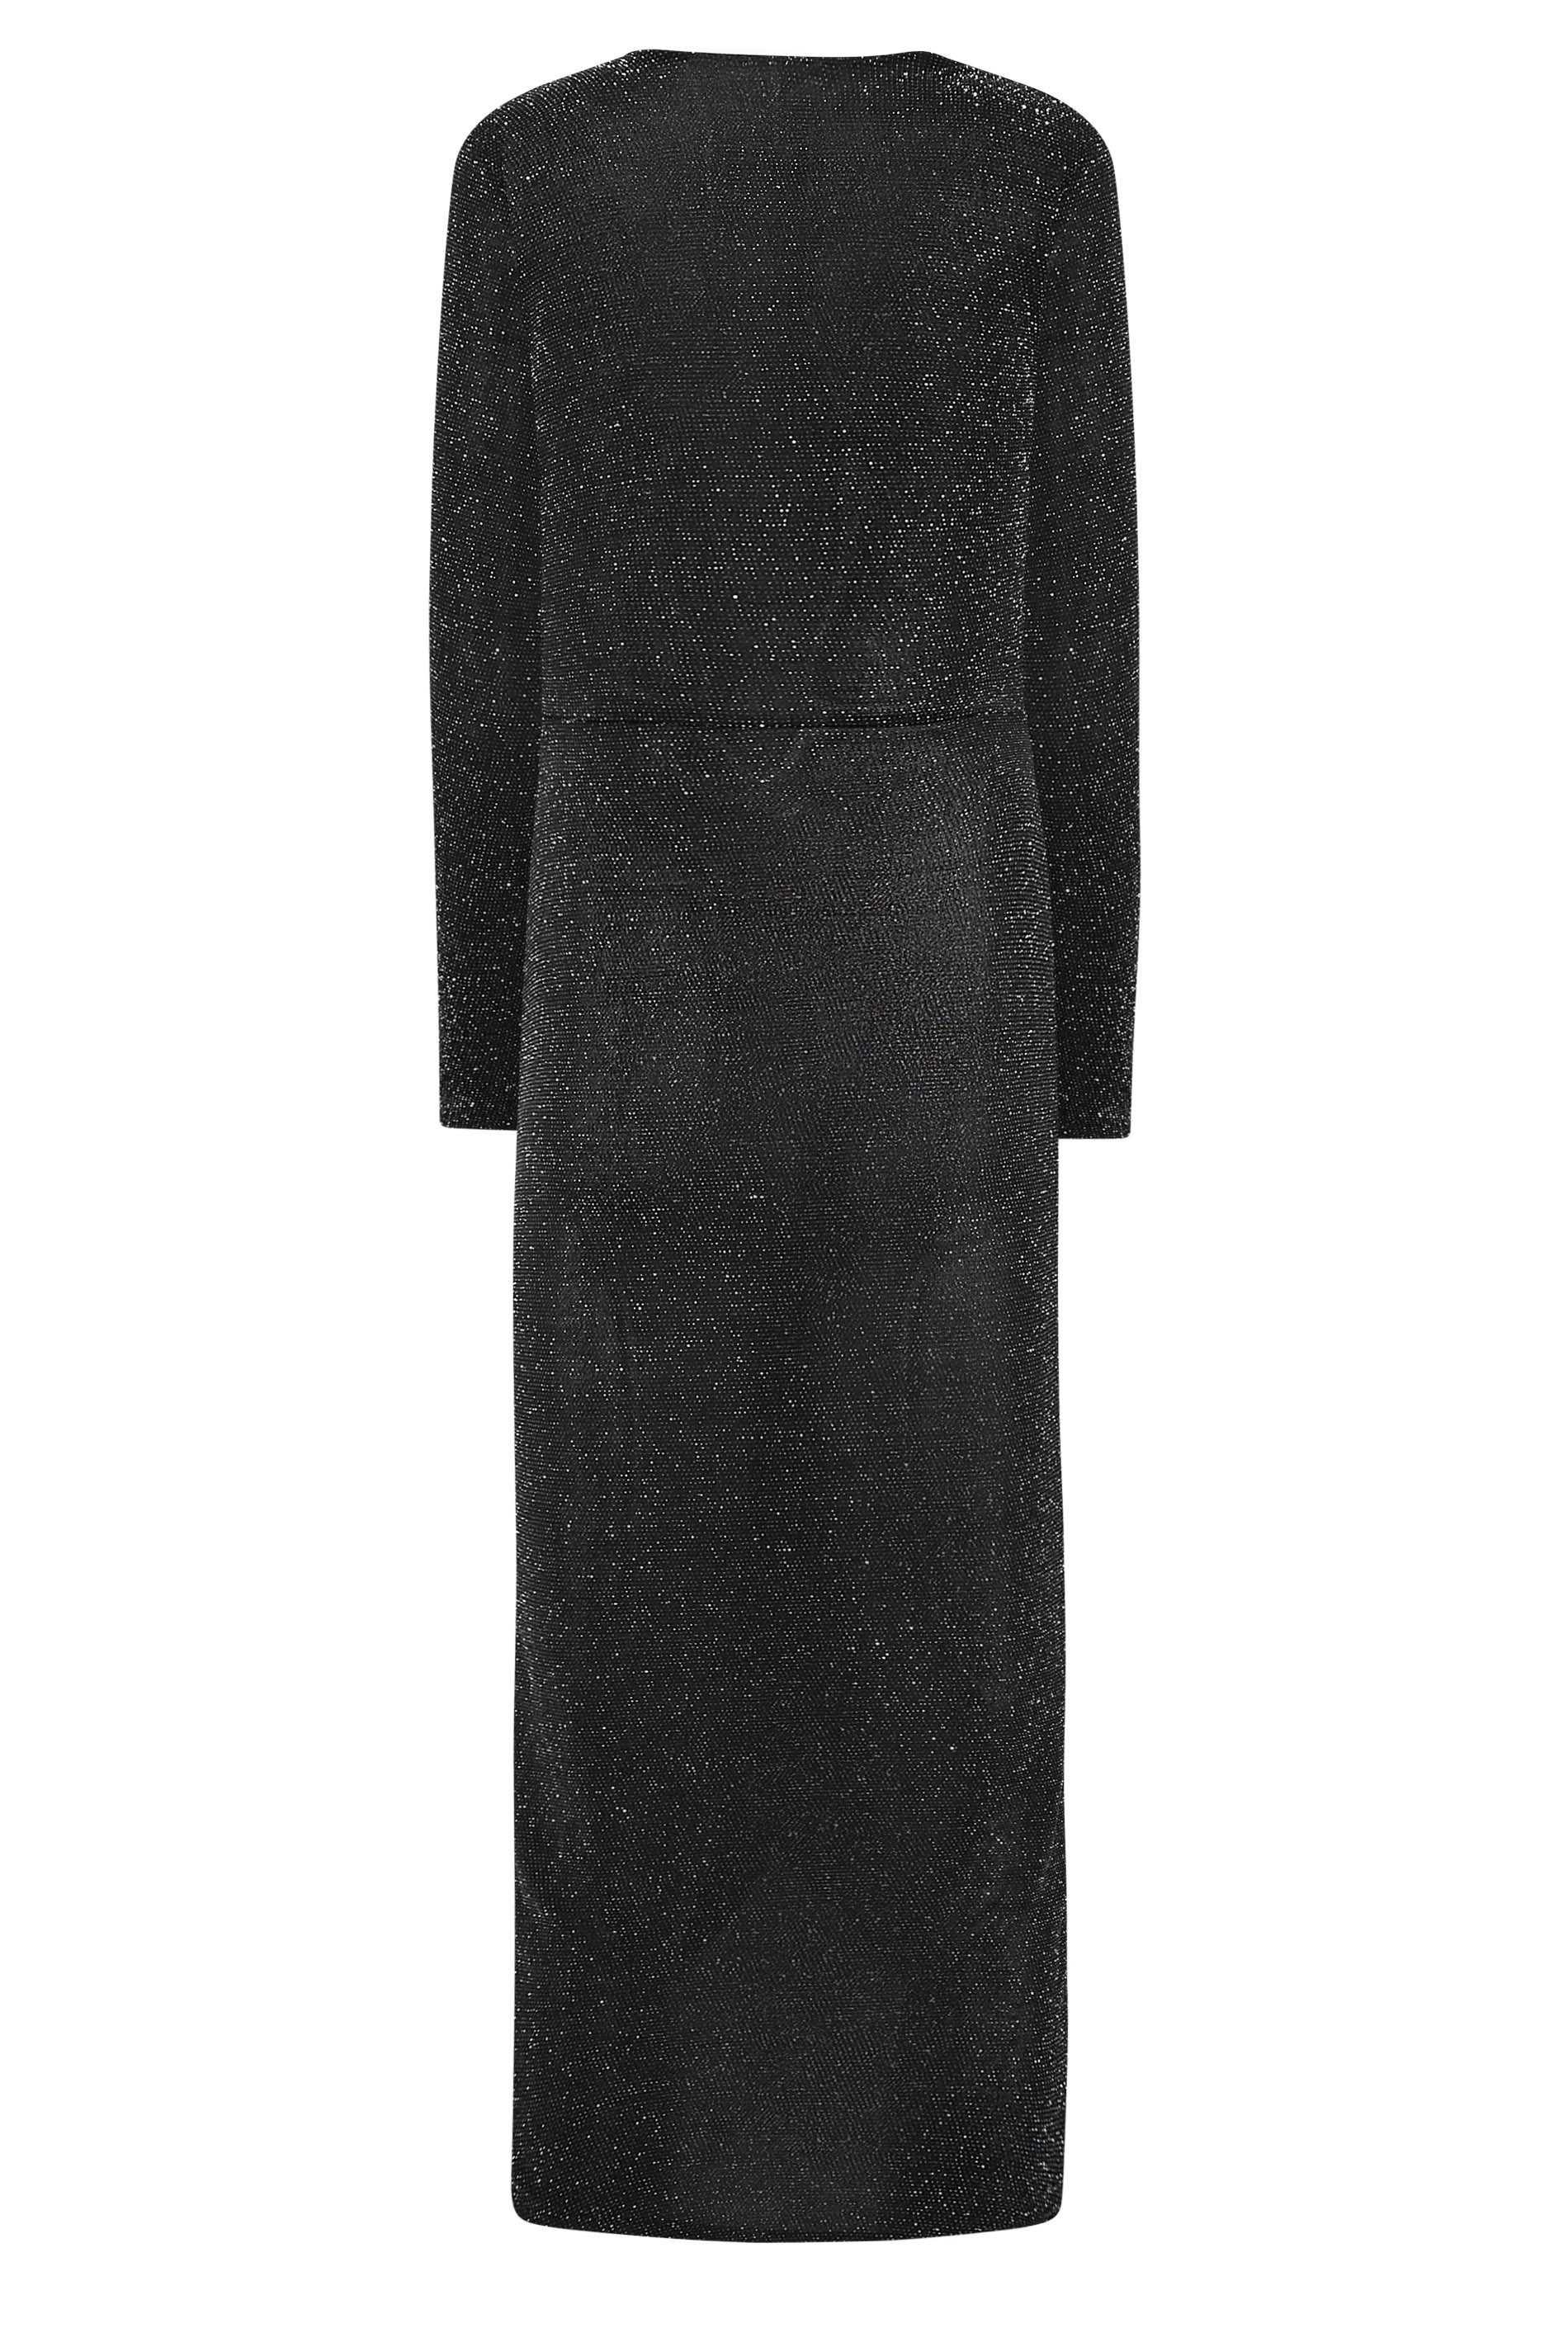 LTS Tall Women's Black & Silver Glitter Wrap Midi Dress | Long Tall Sally 3